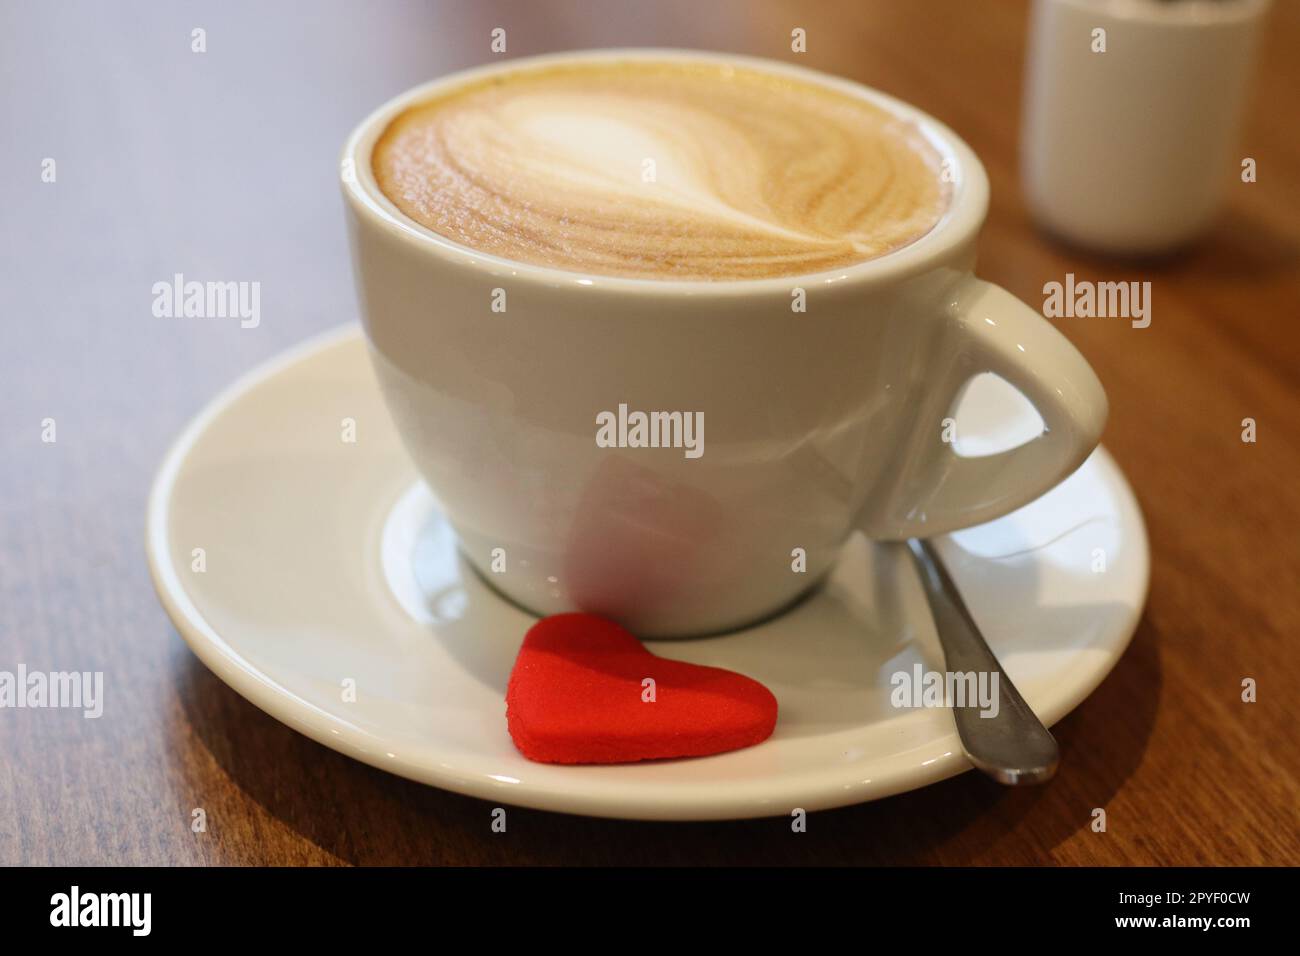 Una tazza di caffè latte in ceramica bianca si trova su un piattino abbinato, con un cucchiaio d'argento Foto Stock